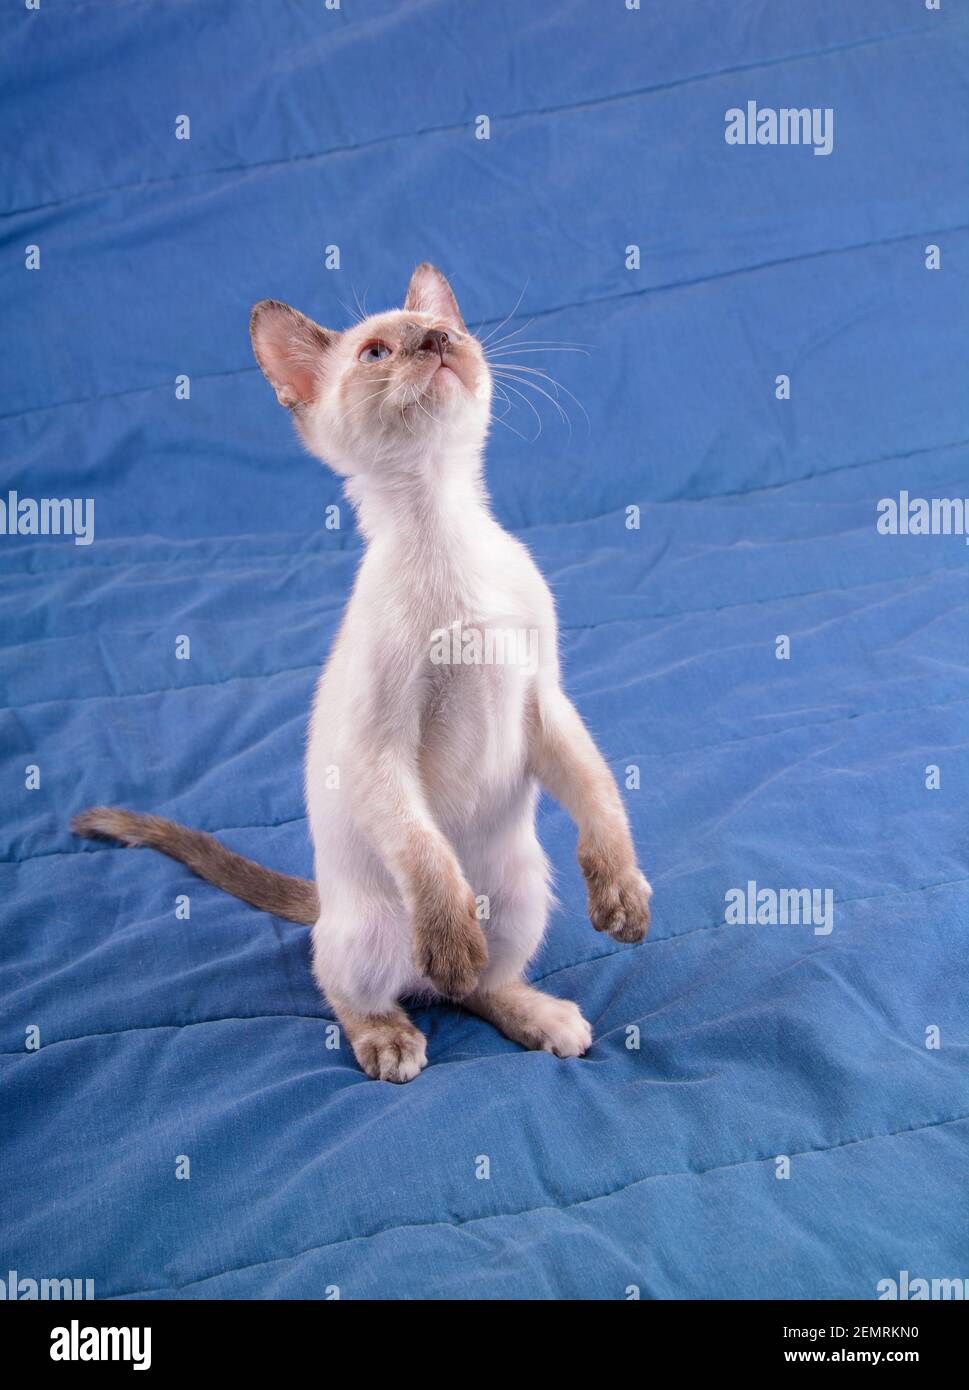 Liebenswert tortie Point Siamese Kätzchen stehen auf zwei Beinen auf einer blauen Decke, Blick über sie Stockfoto